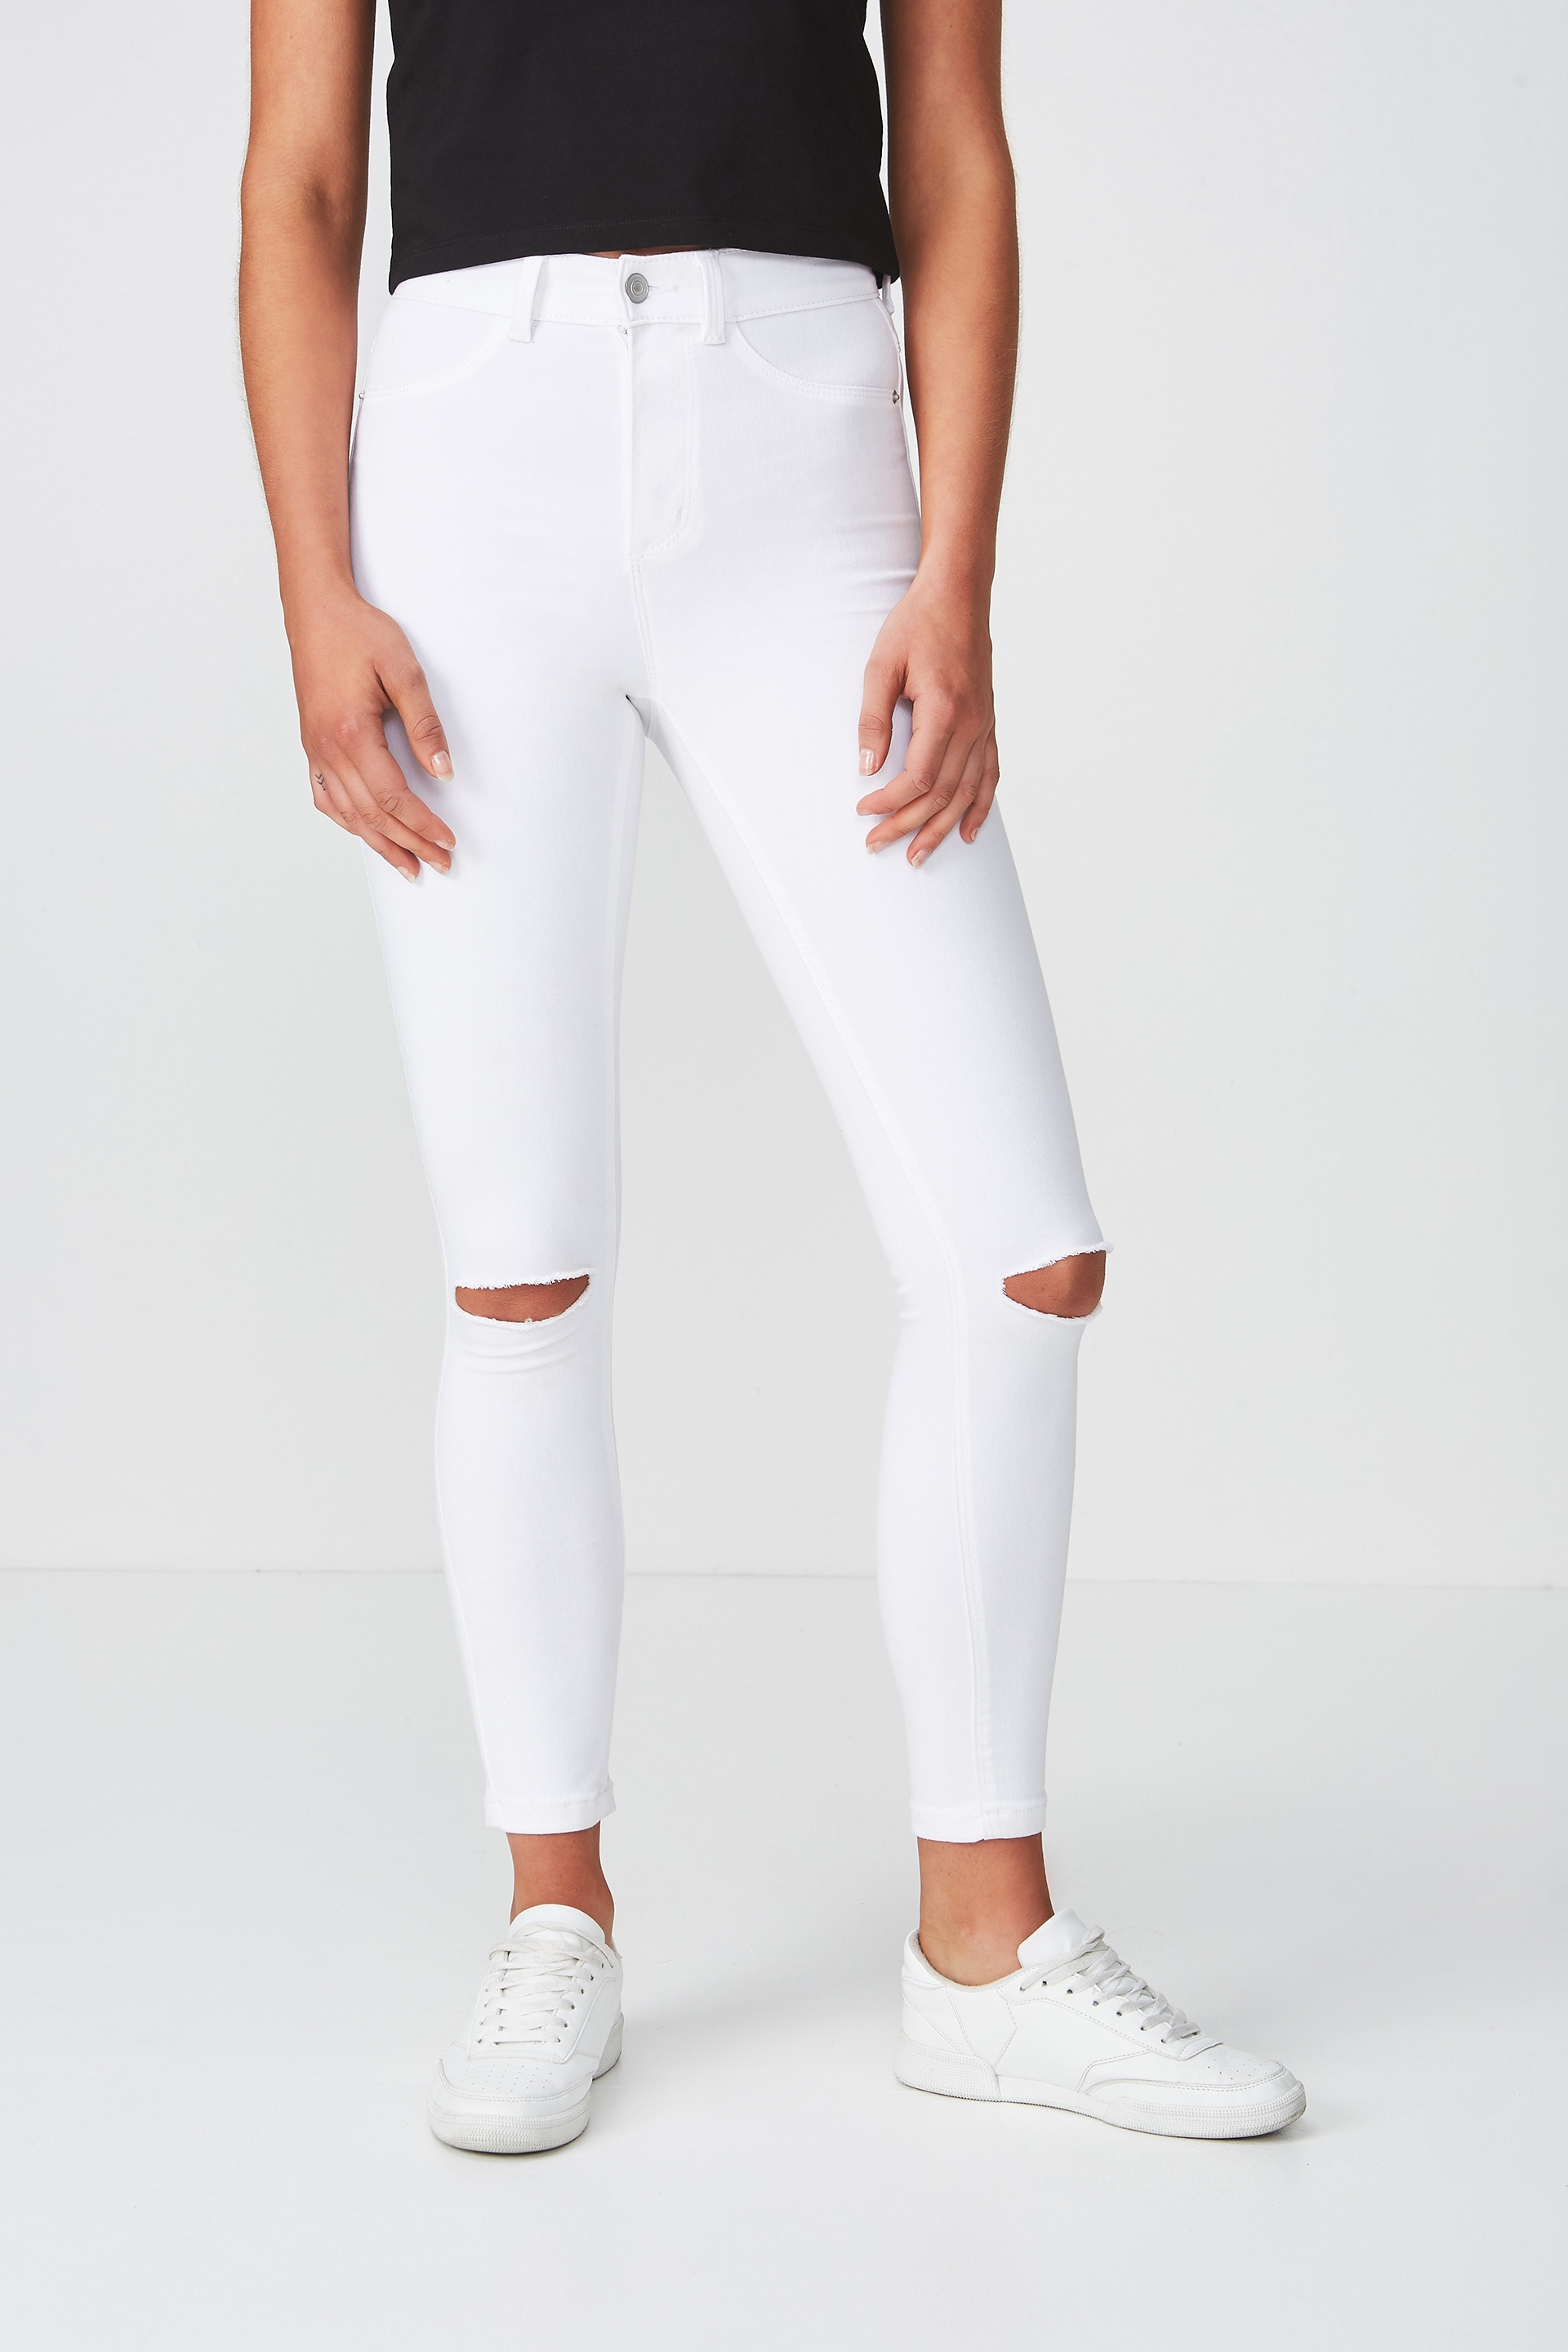 supre white jeans